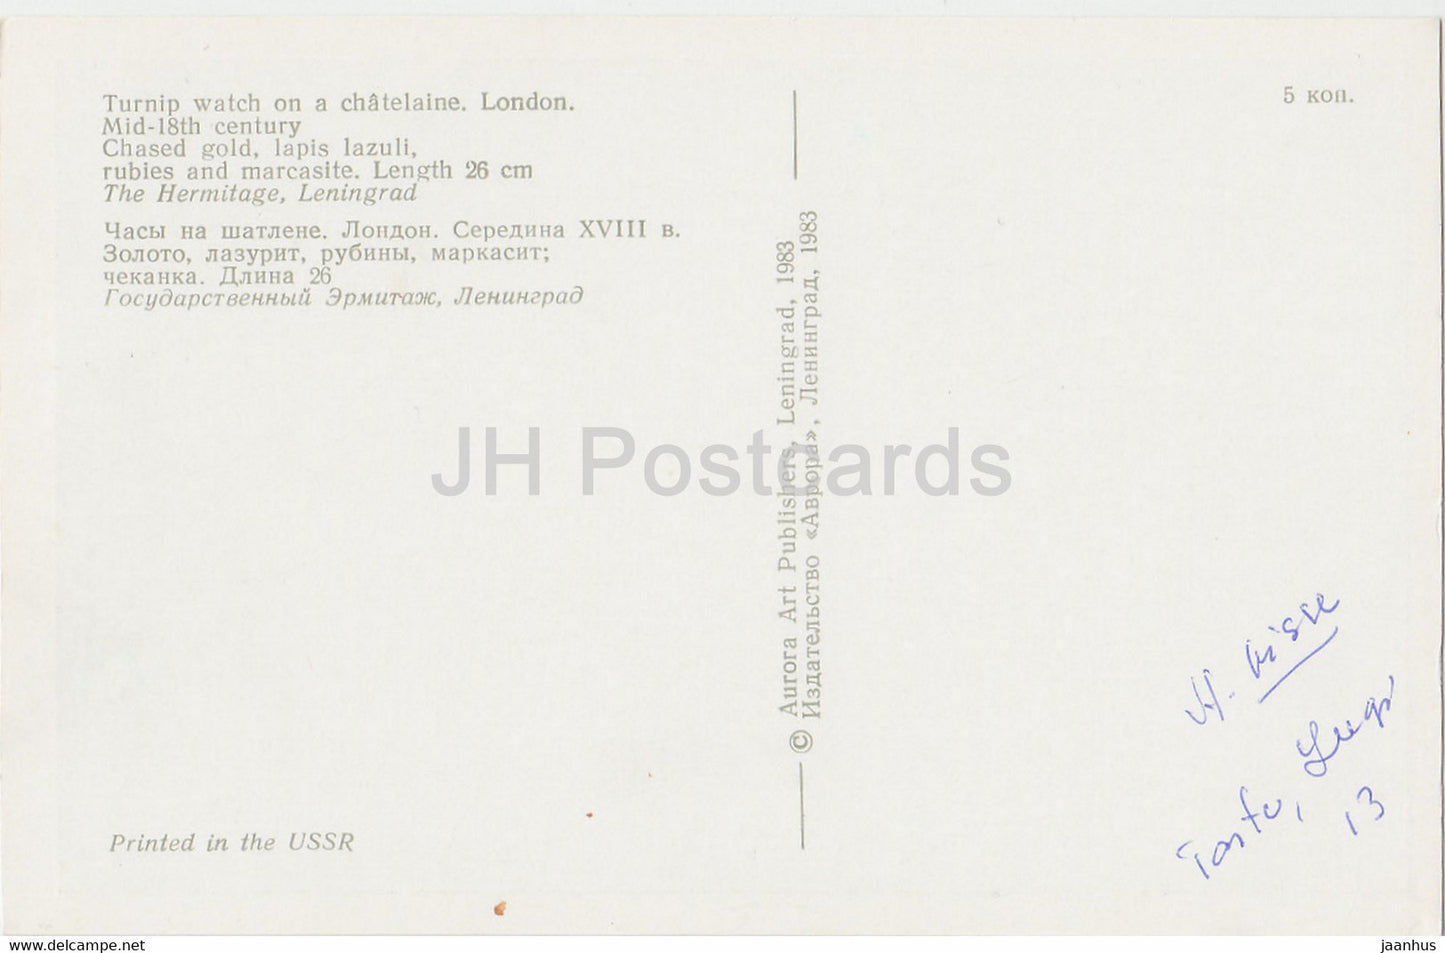 Die Eremitage, Leningrad, Englische Angewandte Kunst – Rübenuhr. London. 18. Jh. - Russland - UdSSR - 1983 - gebraucht